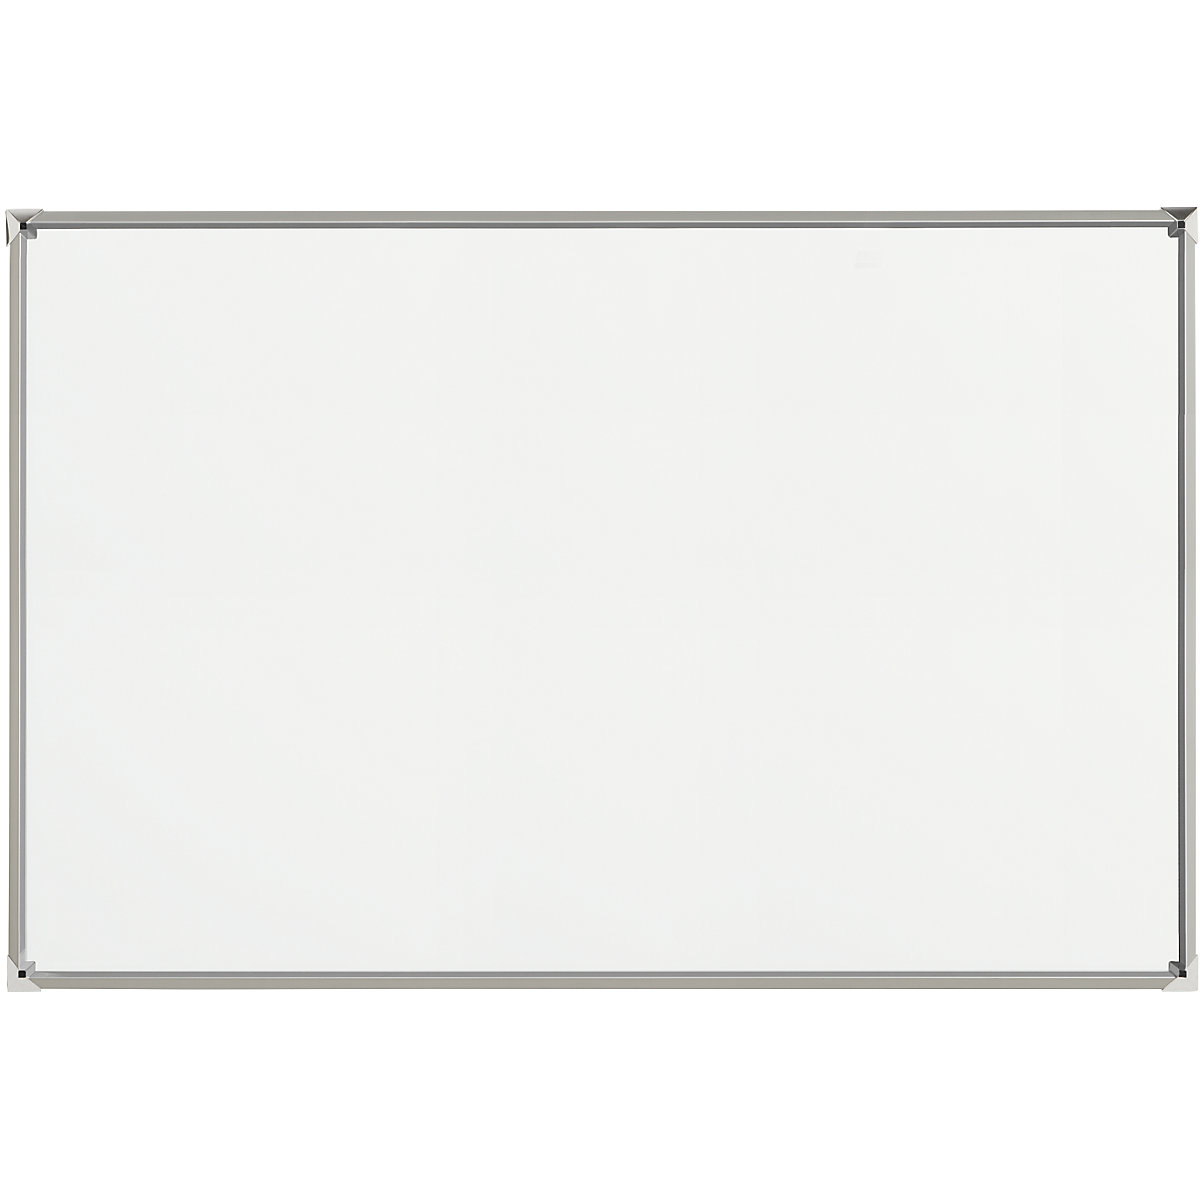 EUROKRAFTpro – Tablica biała z designerską ramą, blacha stalowa, emaliowana, szer. x wys. 1500 x 1000 mm, rama srebrna